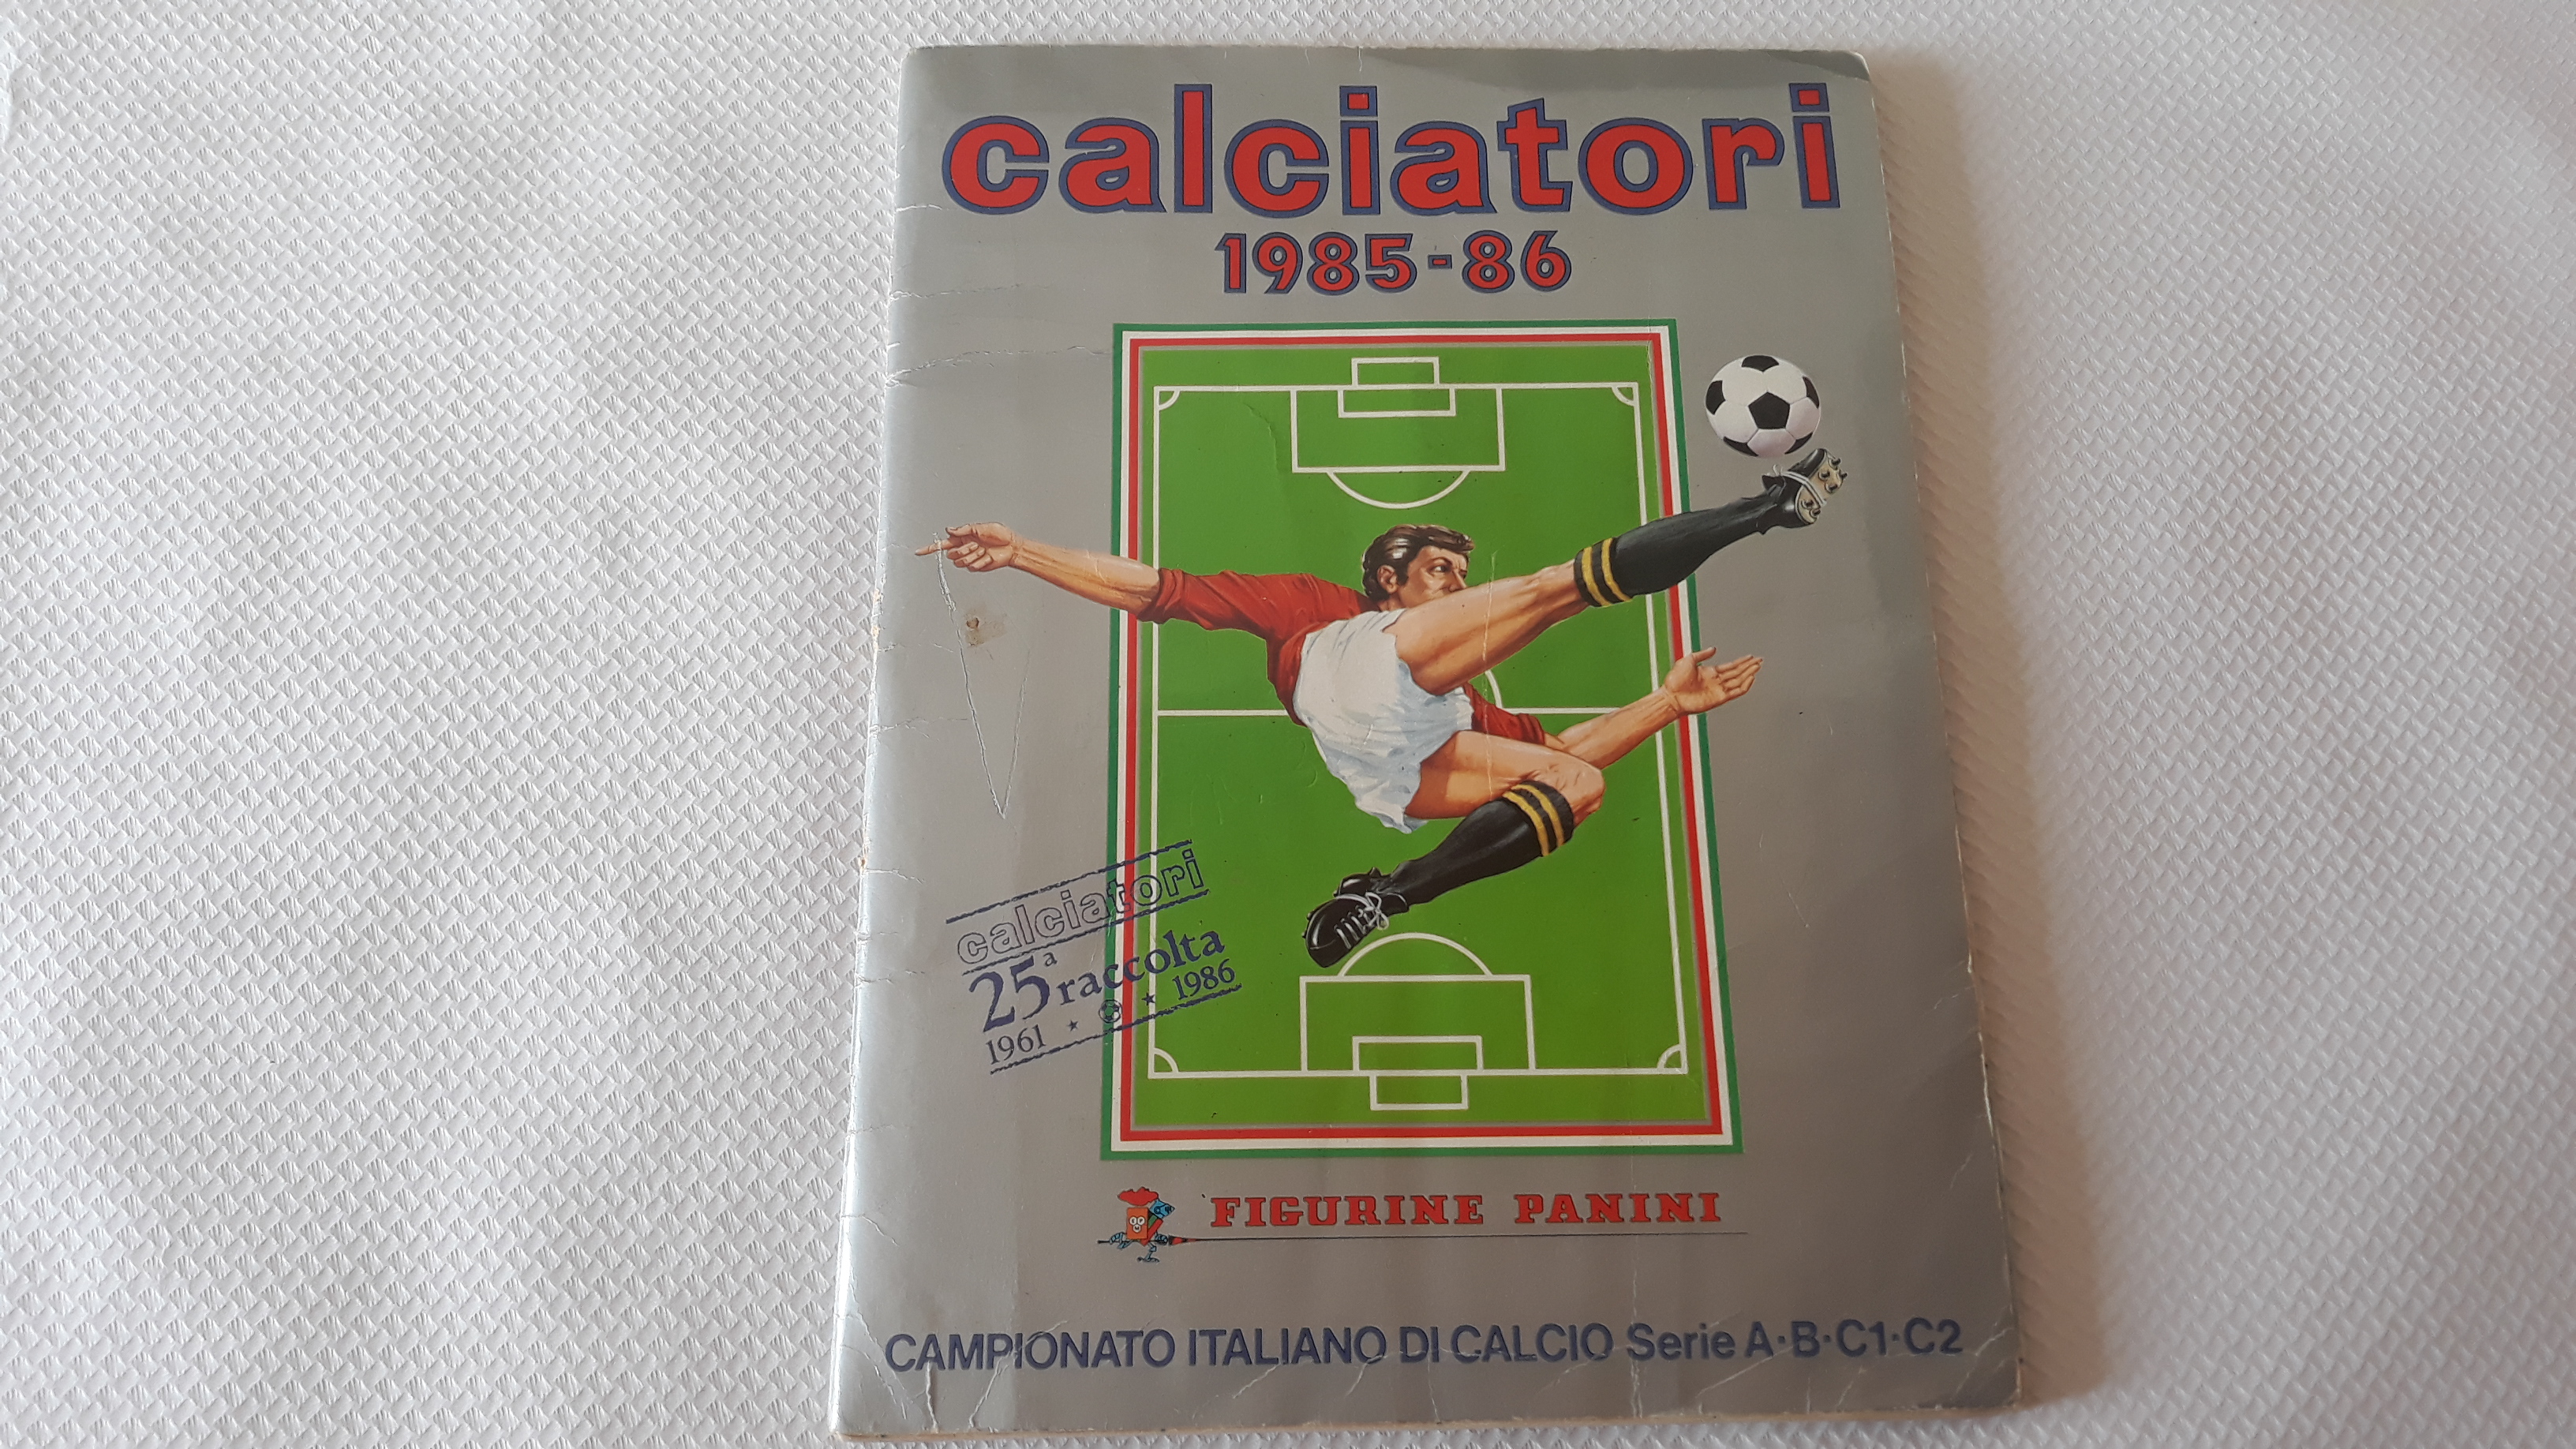 Calciatori Panini 1985 86 Album Figurine Completo - manuelkant